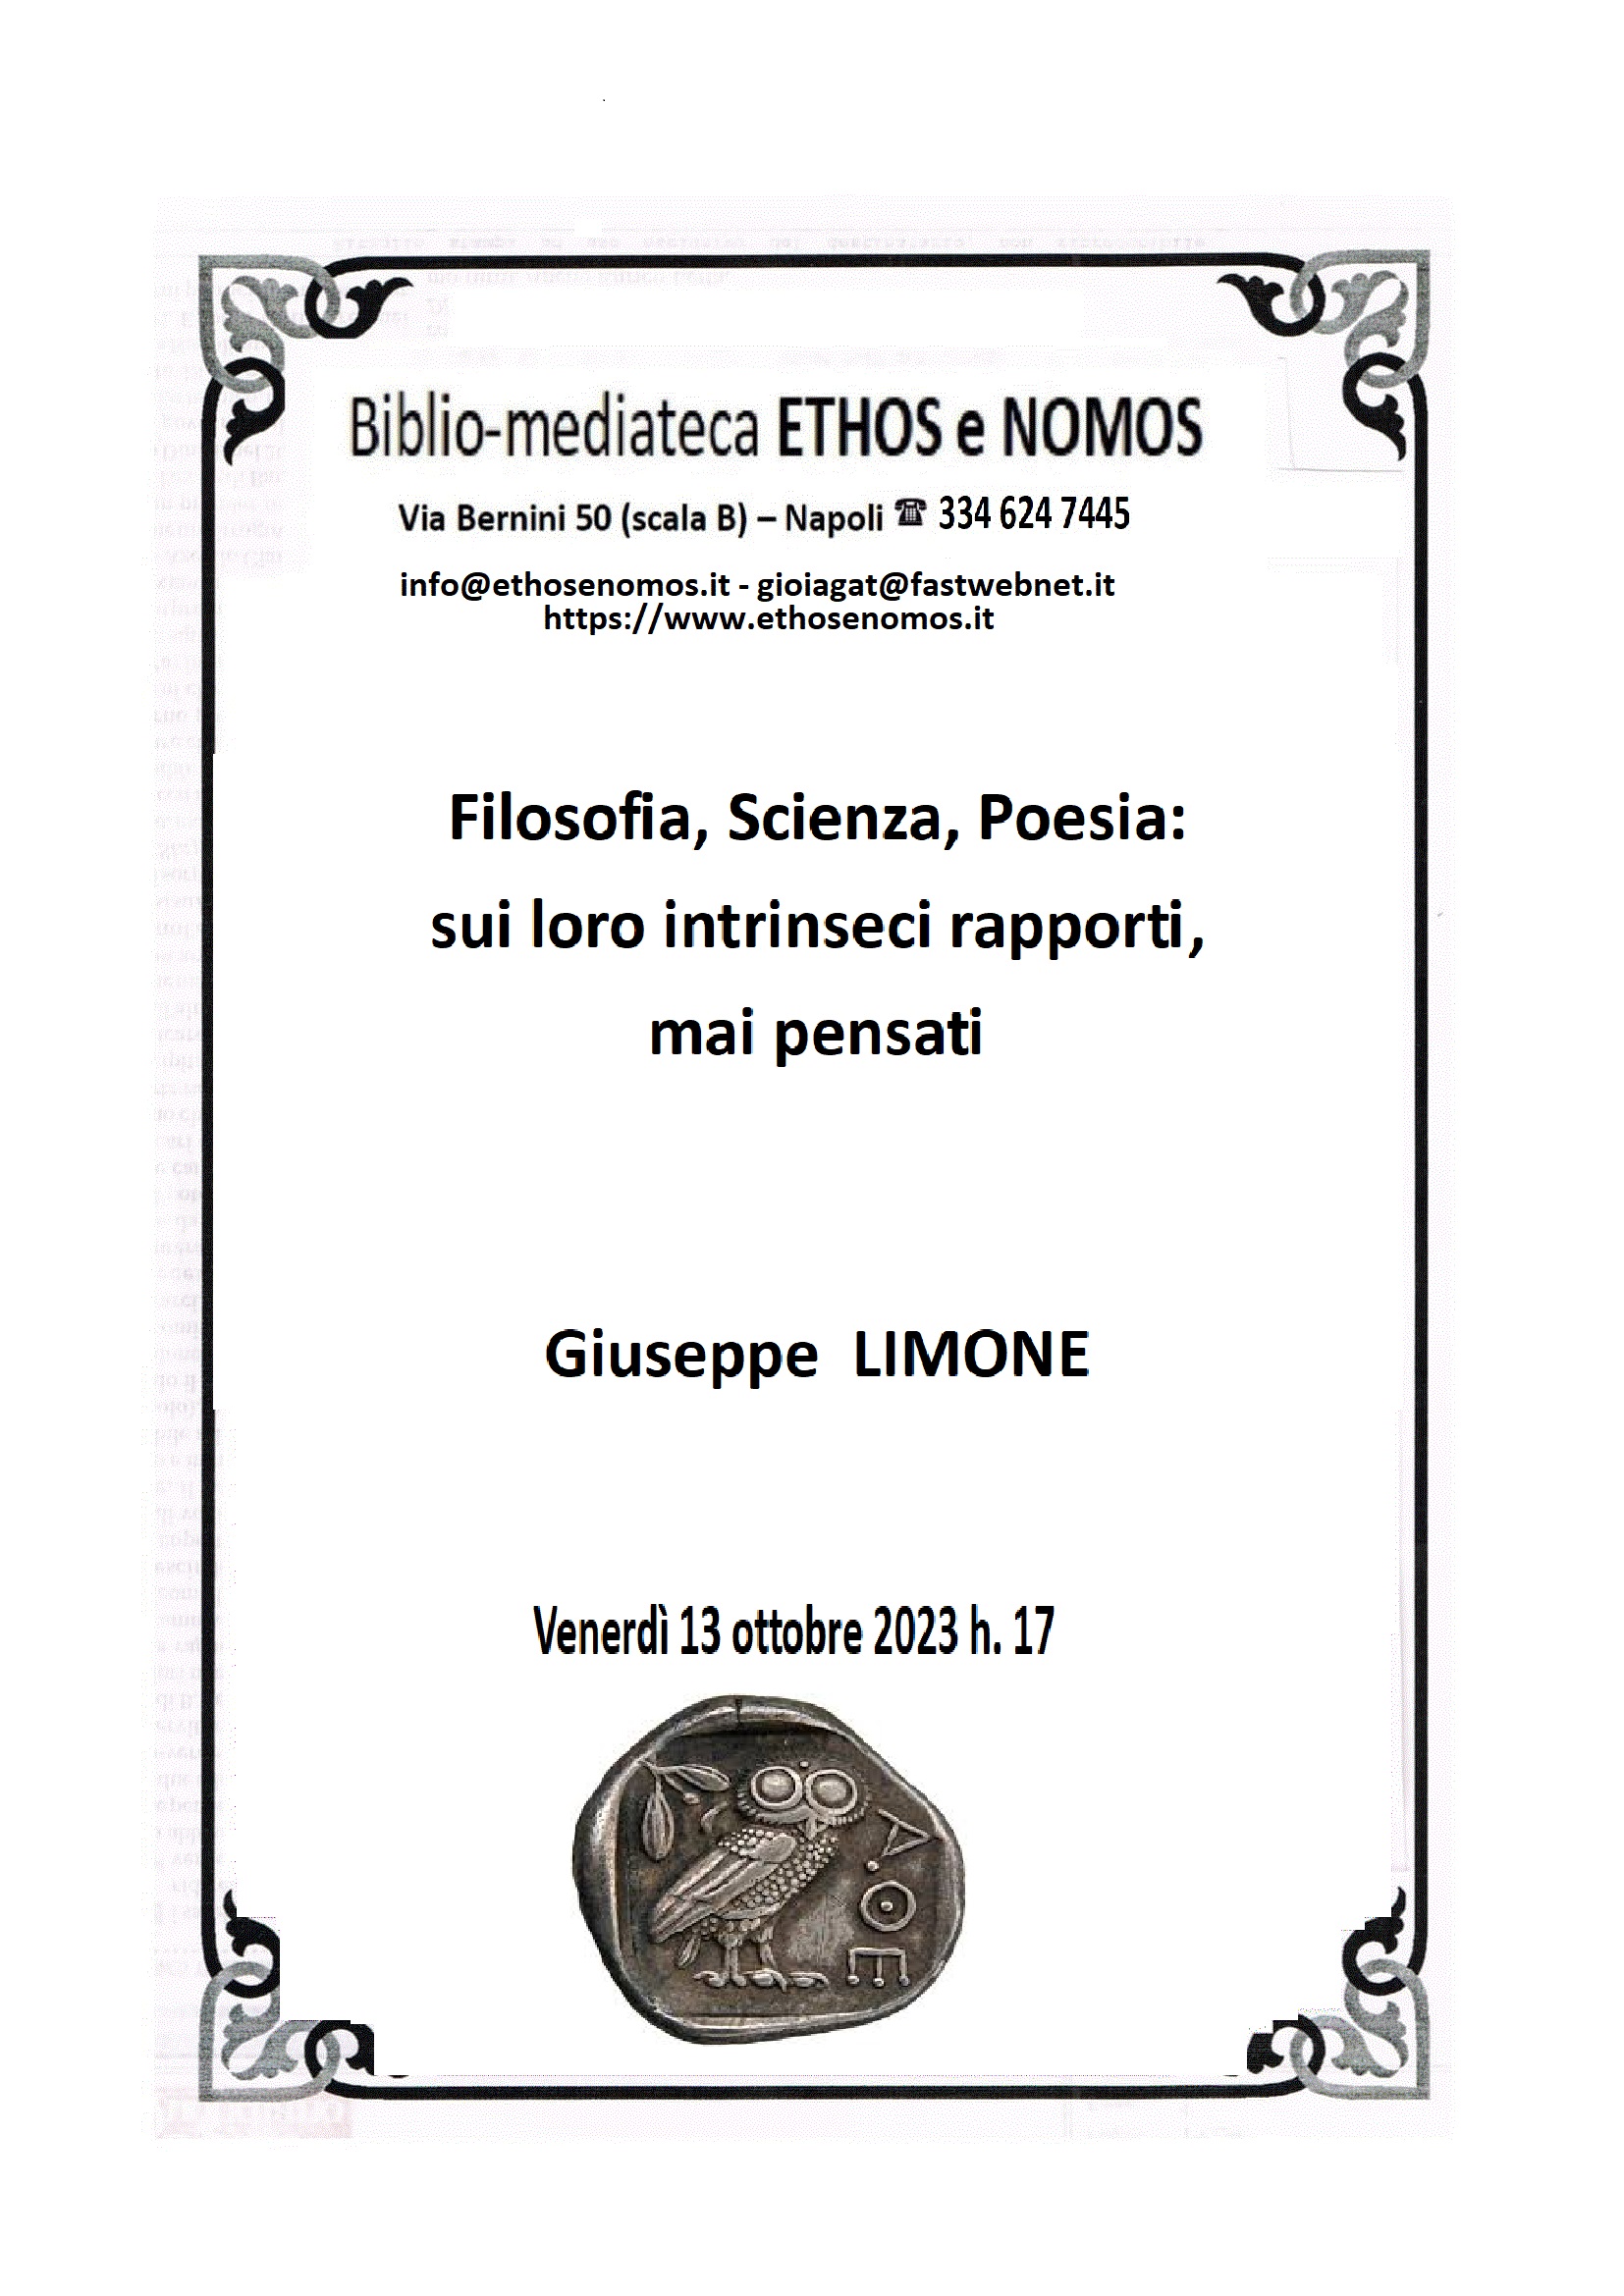 Giuseppe Limone - Filosofia, Scienza, Poesia: sui loro intrinseci rapporti, mai pensati